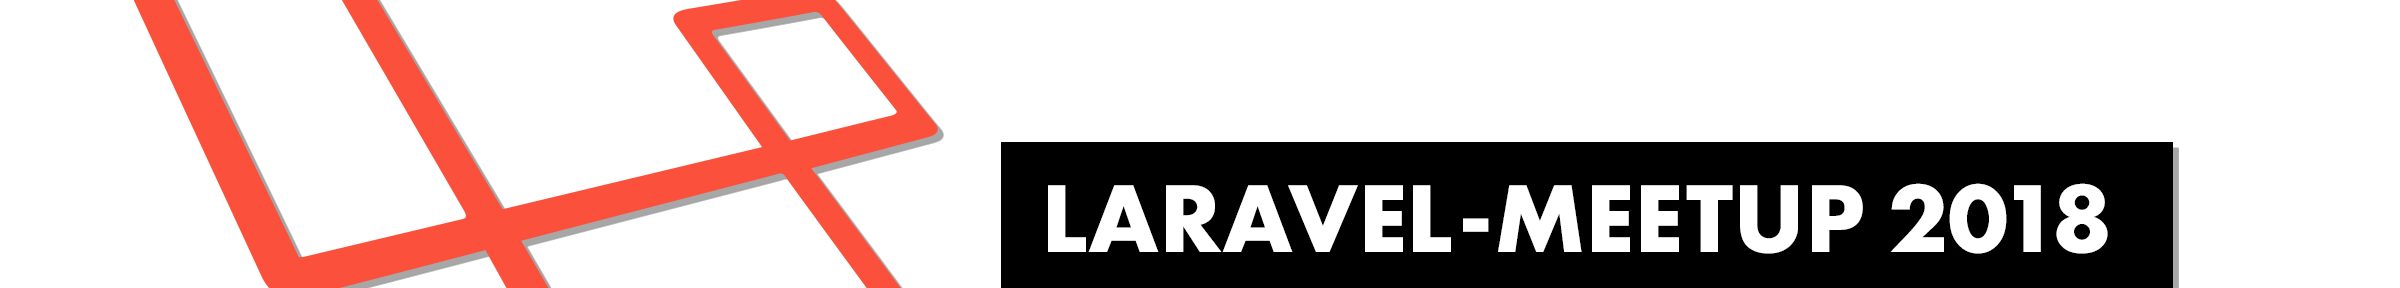 So war es beim ersten Laravel-Meetup 2018